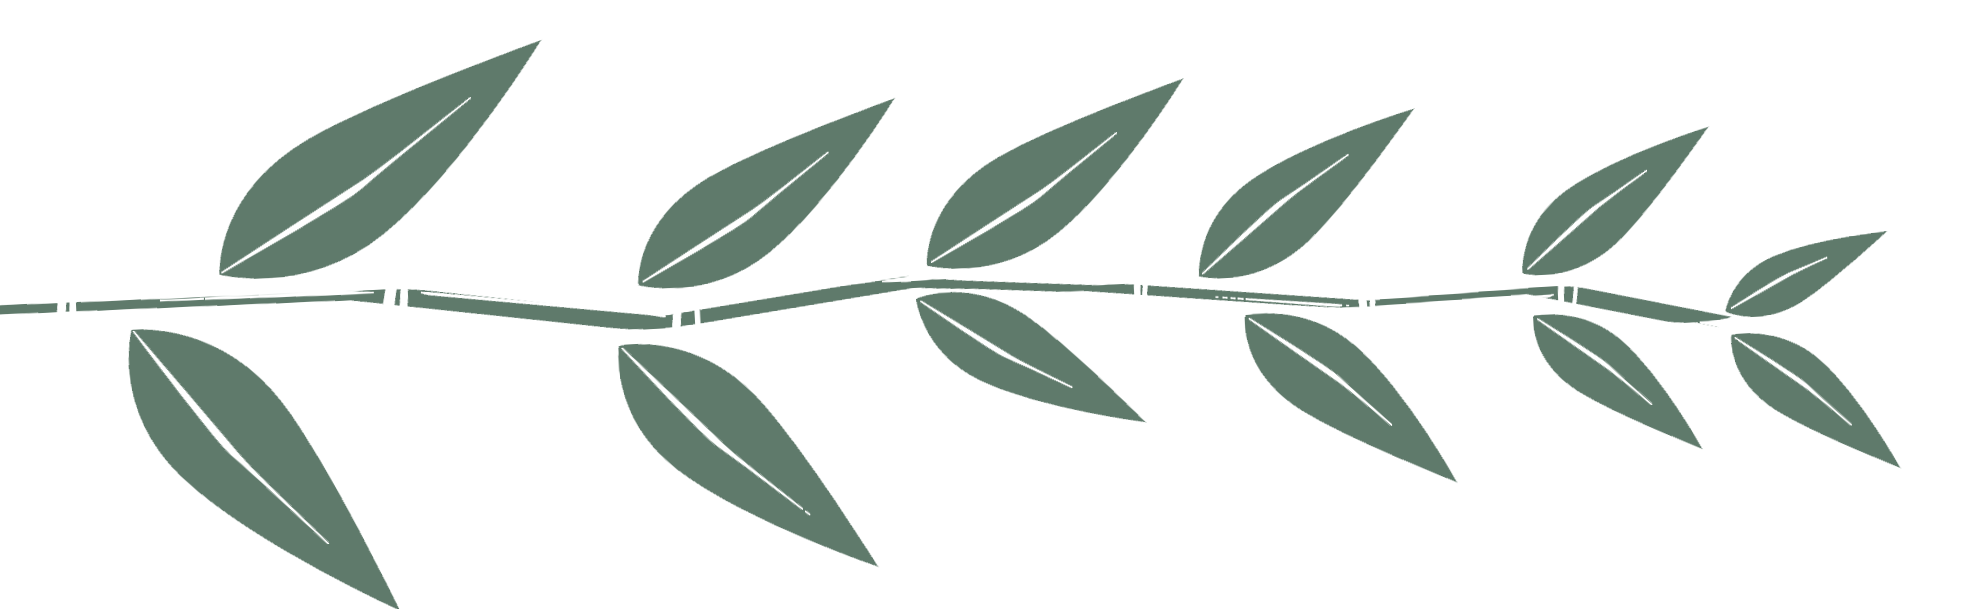 breaker image of a leaf